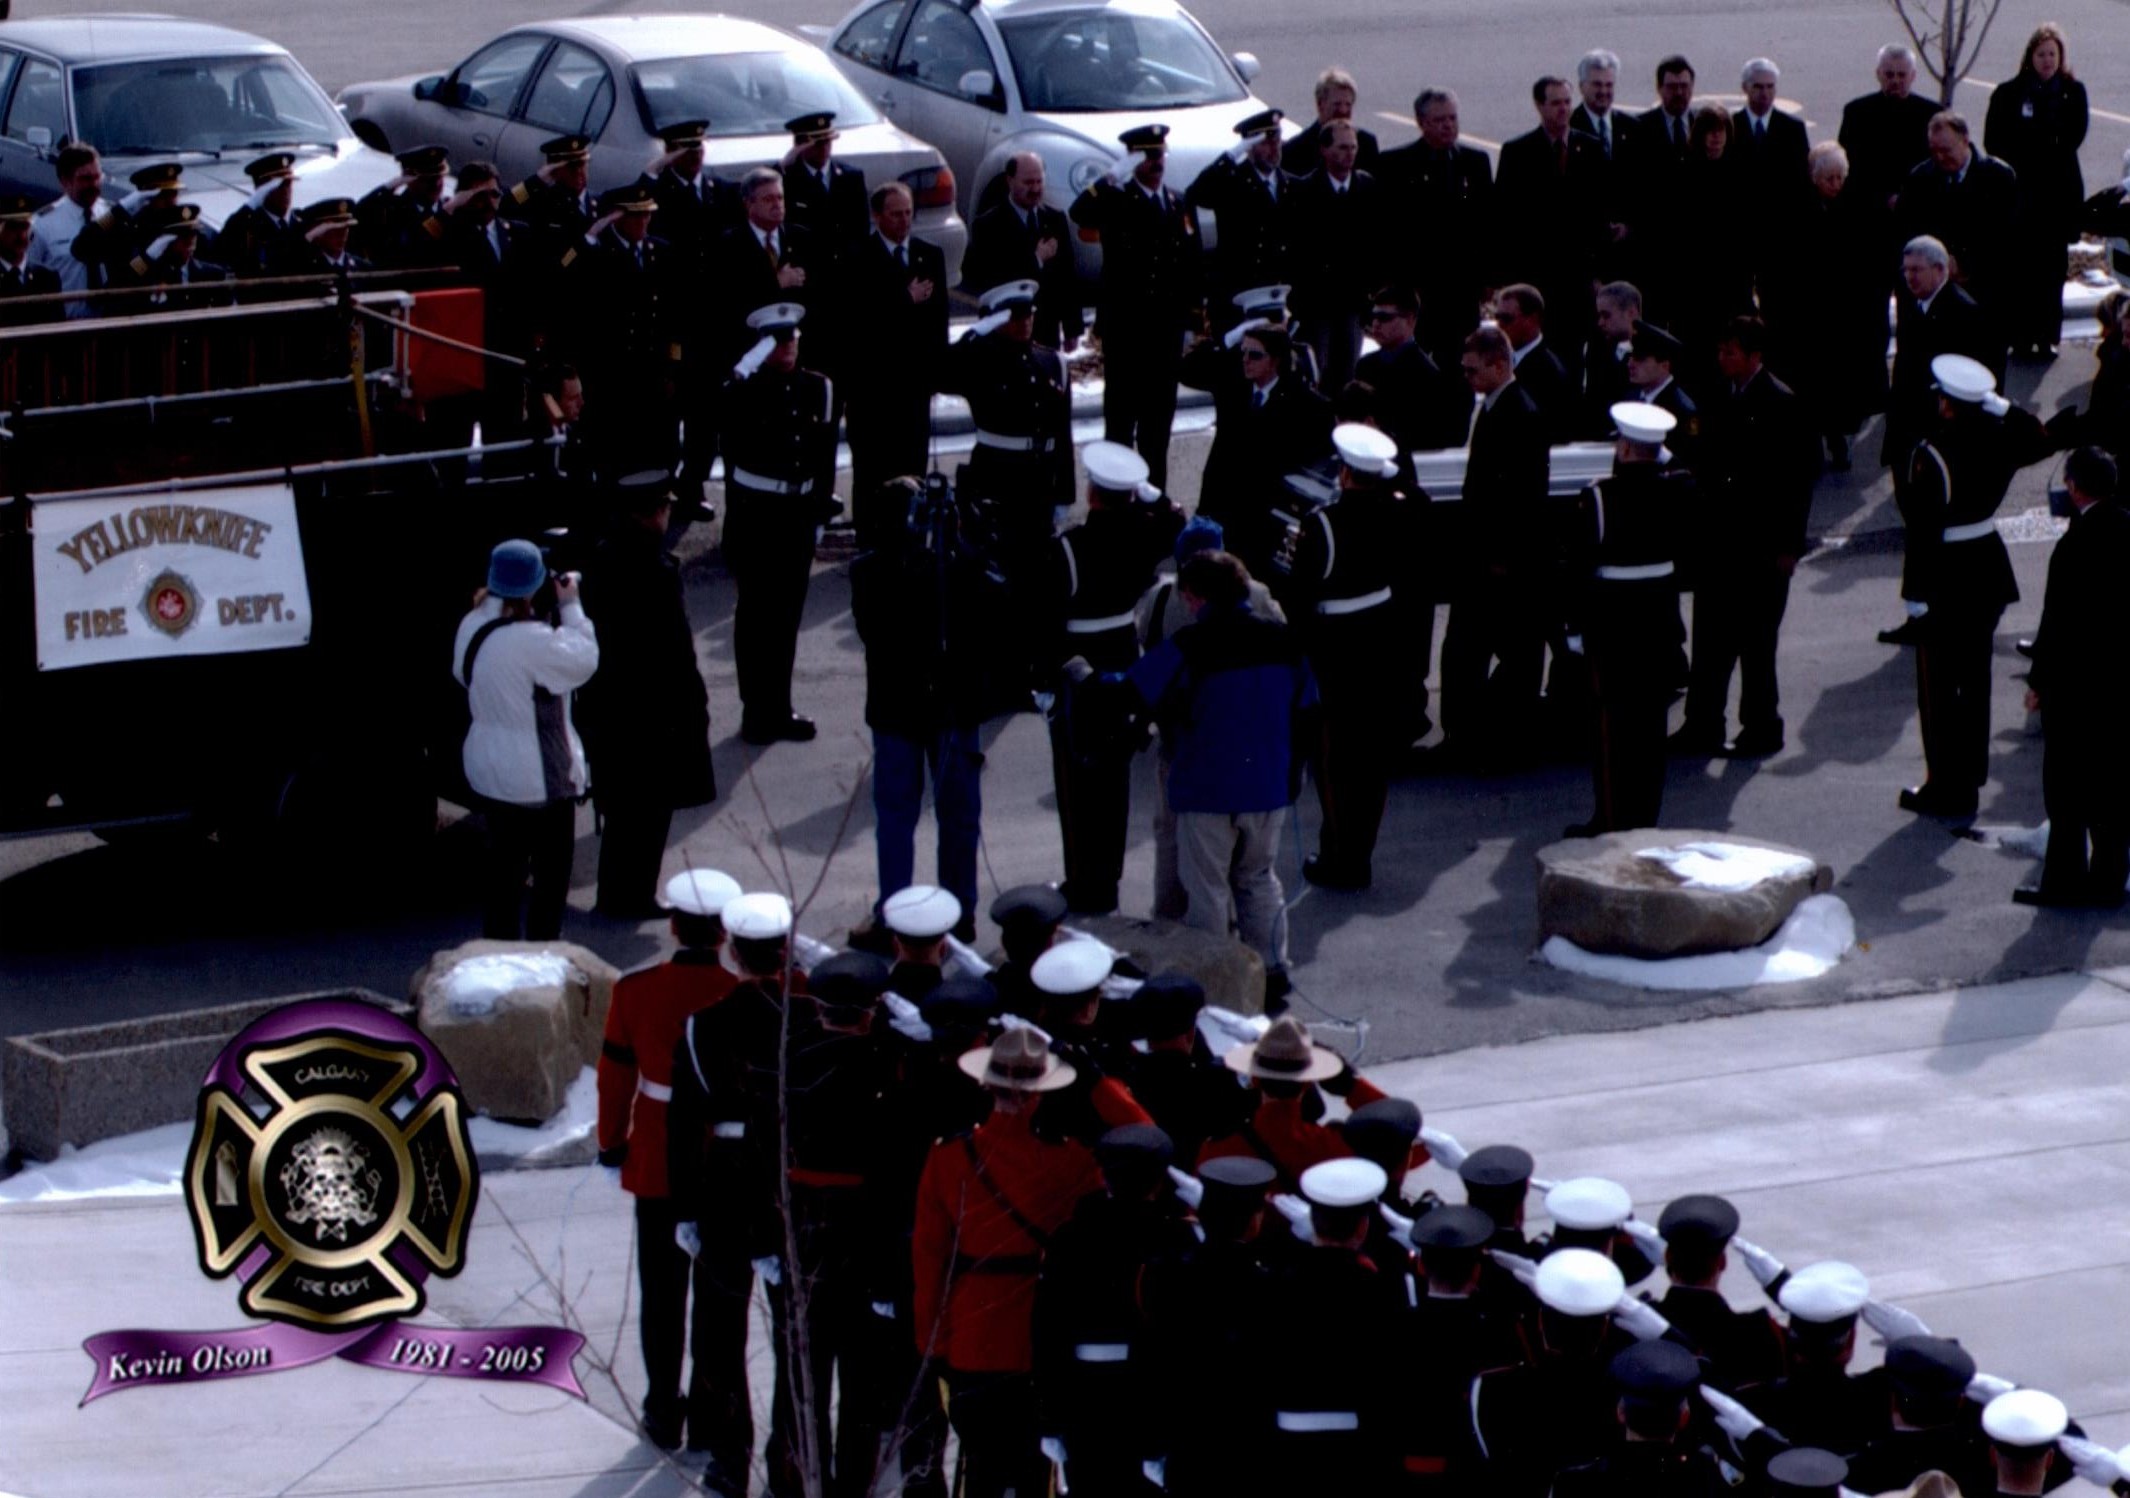 Des membres de la garde d’honneur embarquent le cercueil de Kevin Olson, pompier de Yellowknife, sur l’autopompe cérémoniale. Des pompiers et des polices montées sont au garde-à-vous et gardent le salut.